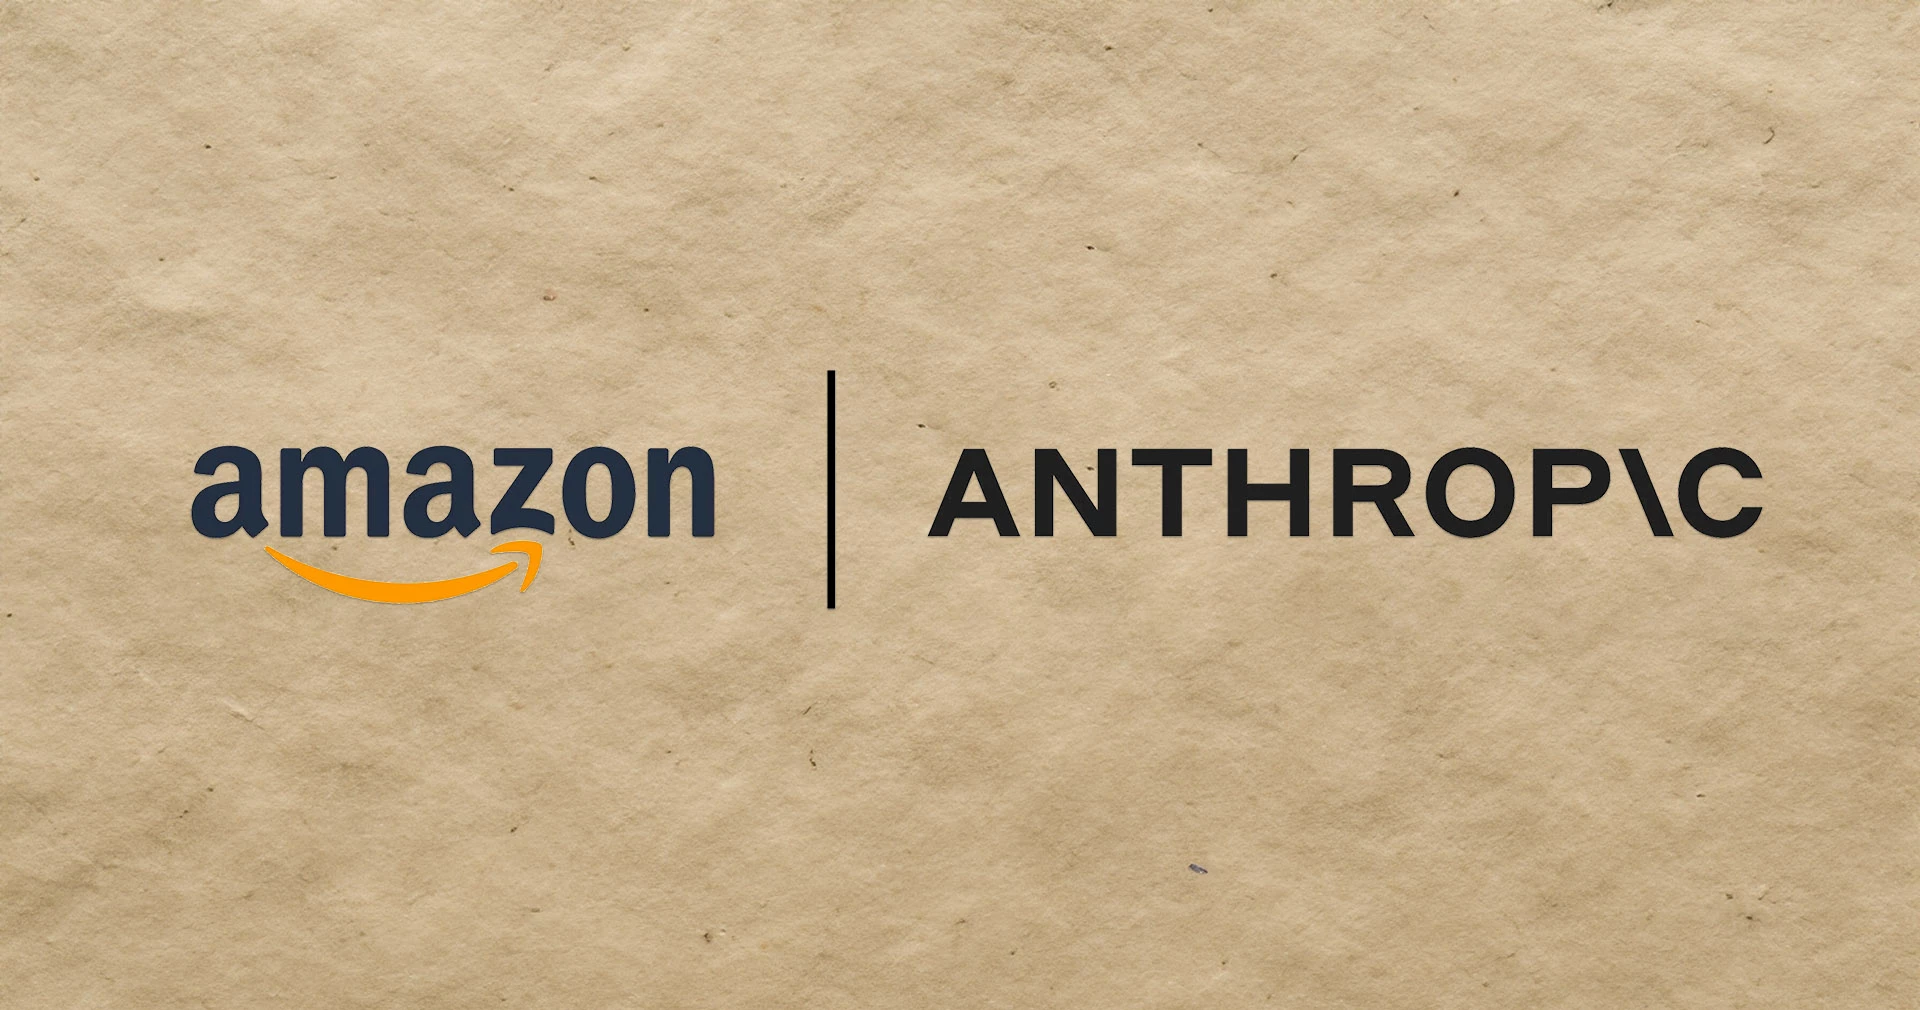 Amazon + Anthropic.